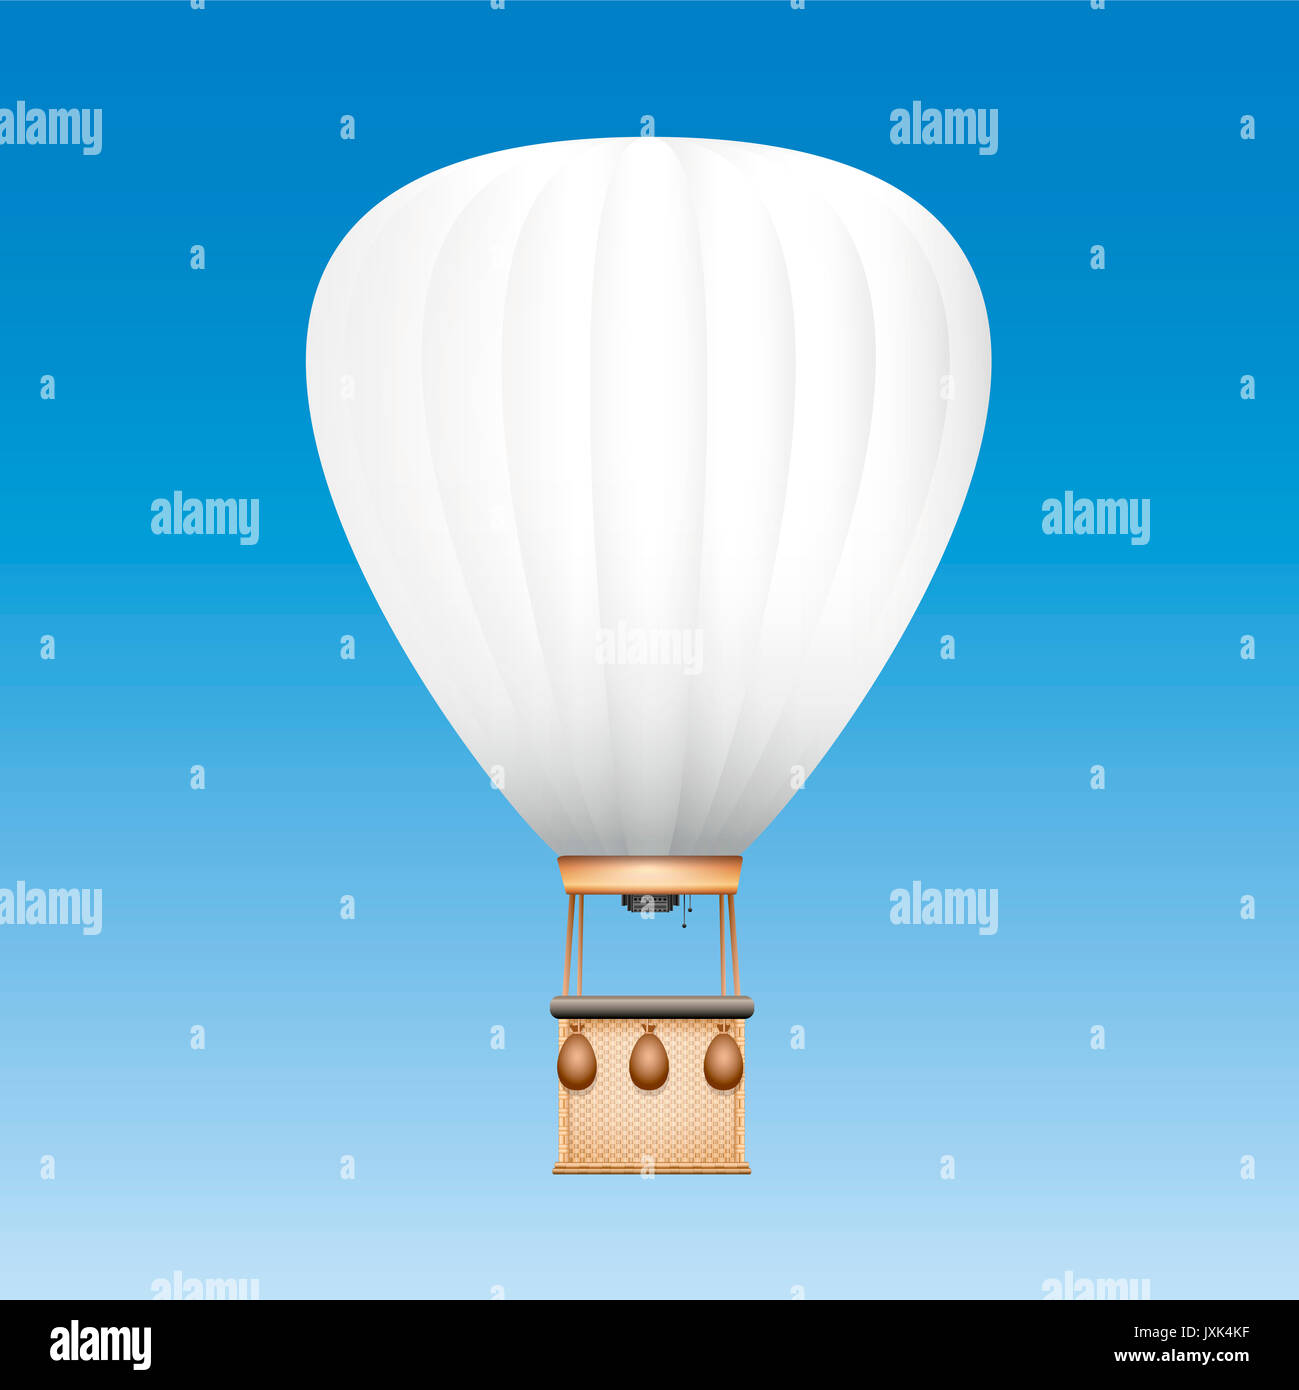 Ballon captif avec surface blanche pour être utilisé comme espace publicitaire pour les textes, les images ou le logo de votre entreprise - illustration sur fond de ciel bleu. Banque D'Images